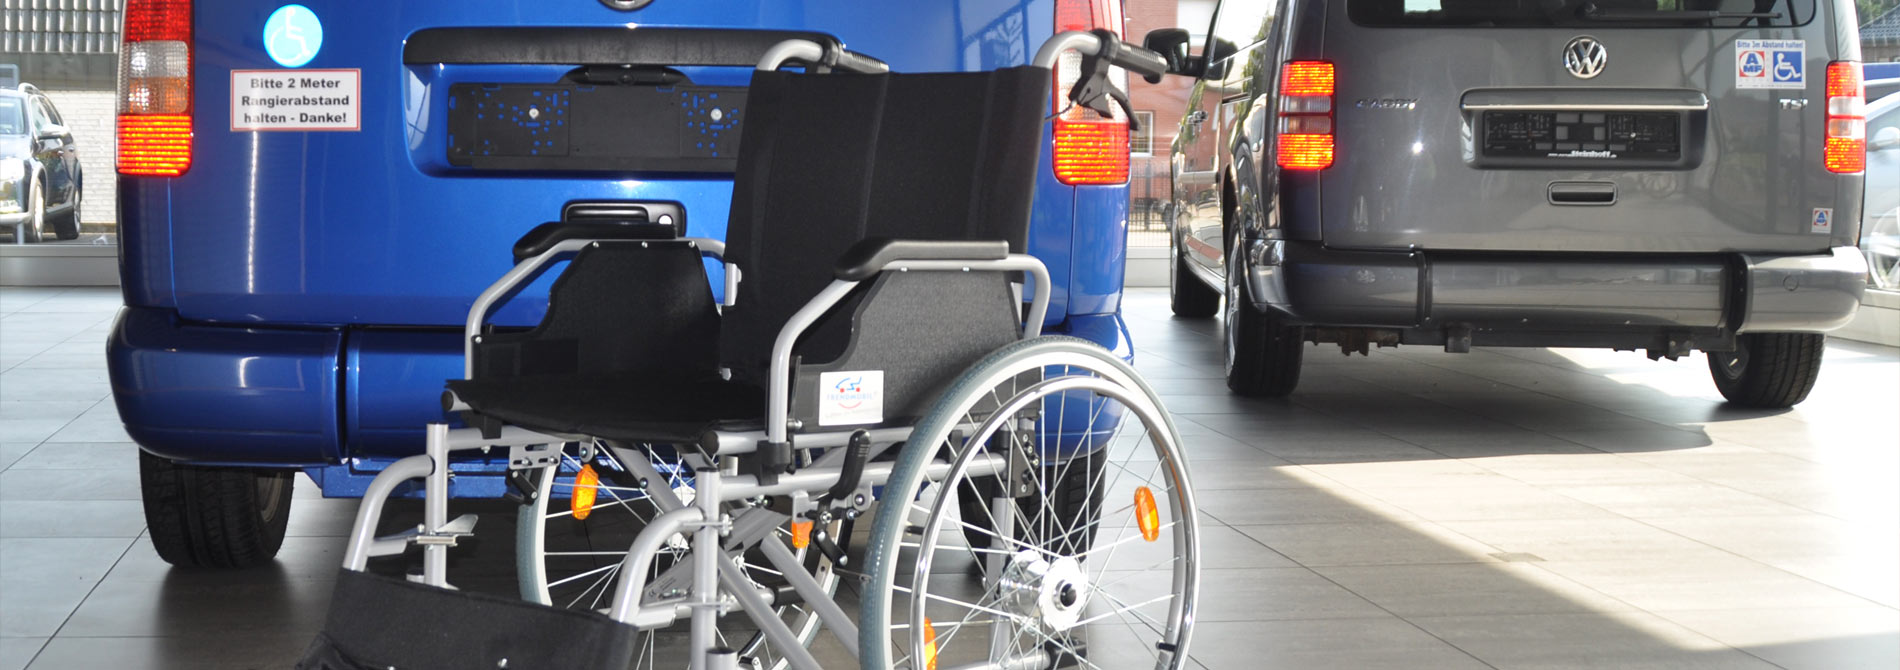 Auto Steinhoff Südkirchen - Gebrauchtwagen, Werkstatt, Behindertengerechte Fahrzeuge - Behindertengerechte Fahrzeuge